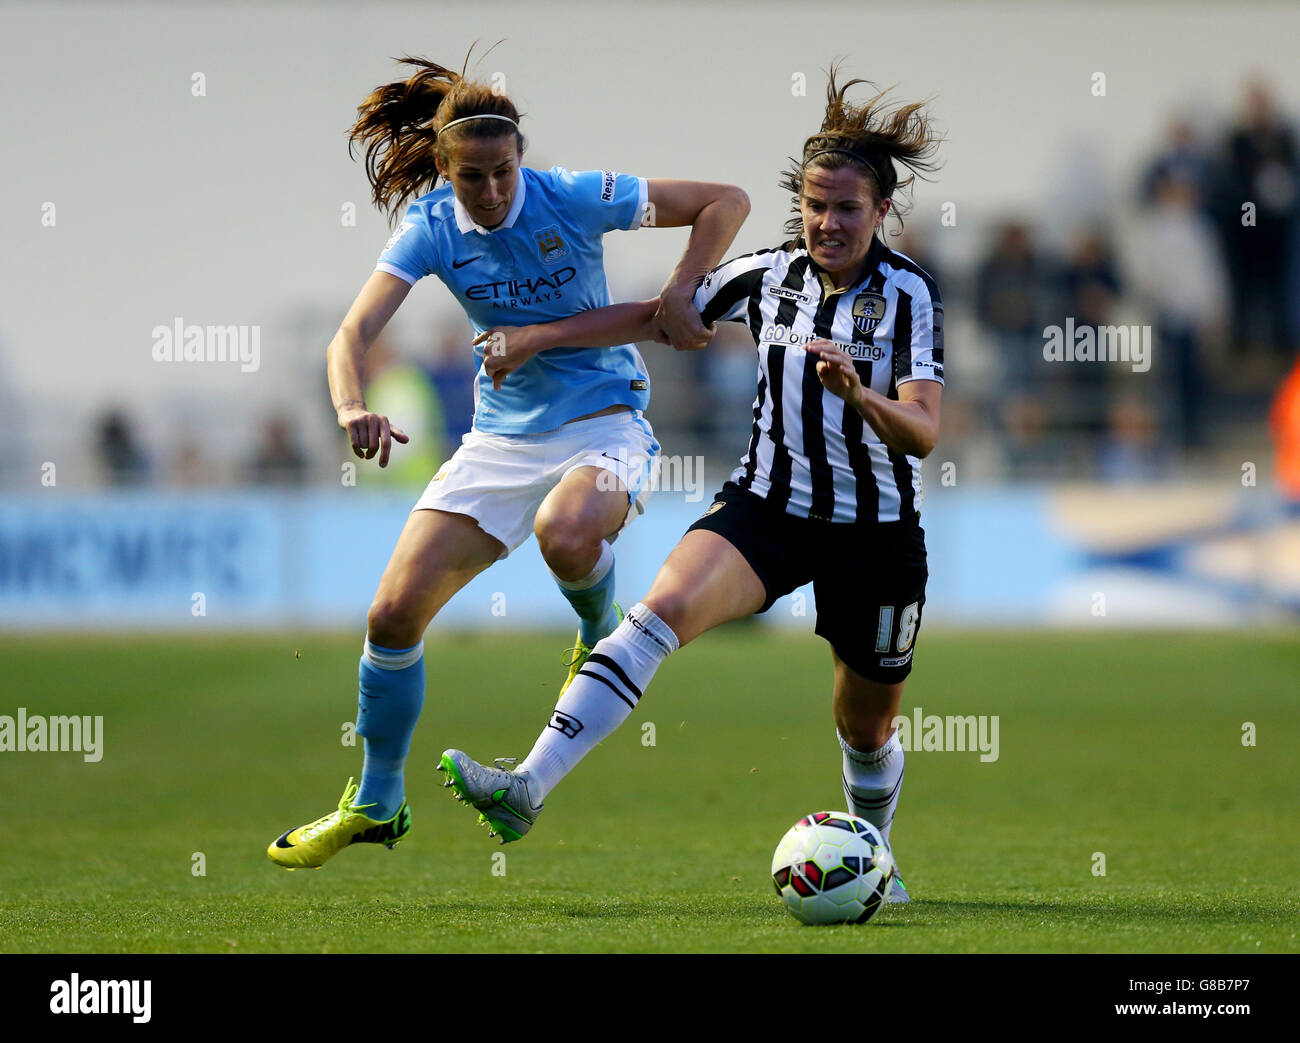 Soccer - Women's Super League - Manchester City Mesdames v Notts County - le stade de l'Académie Banque D'Images